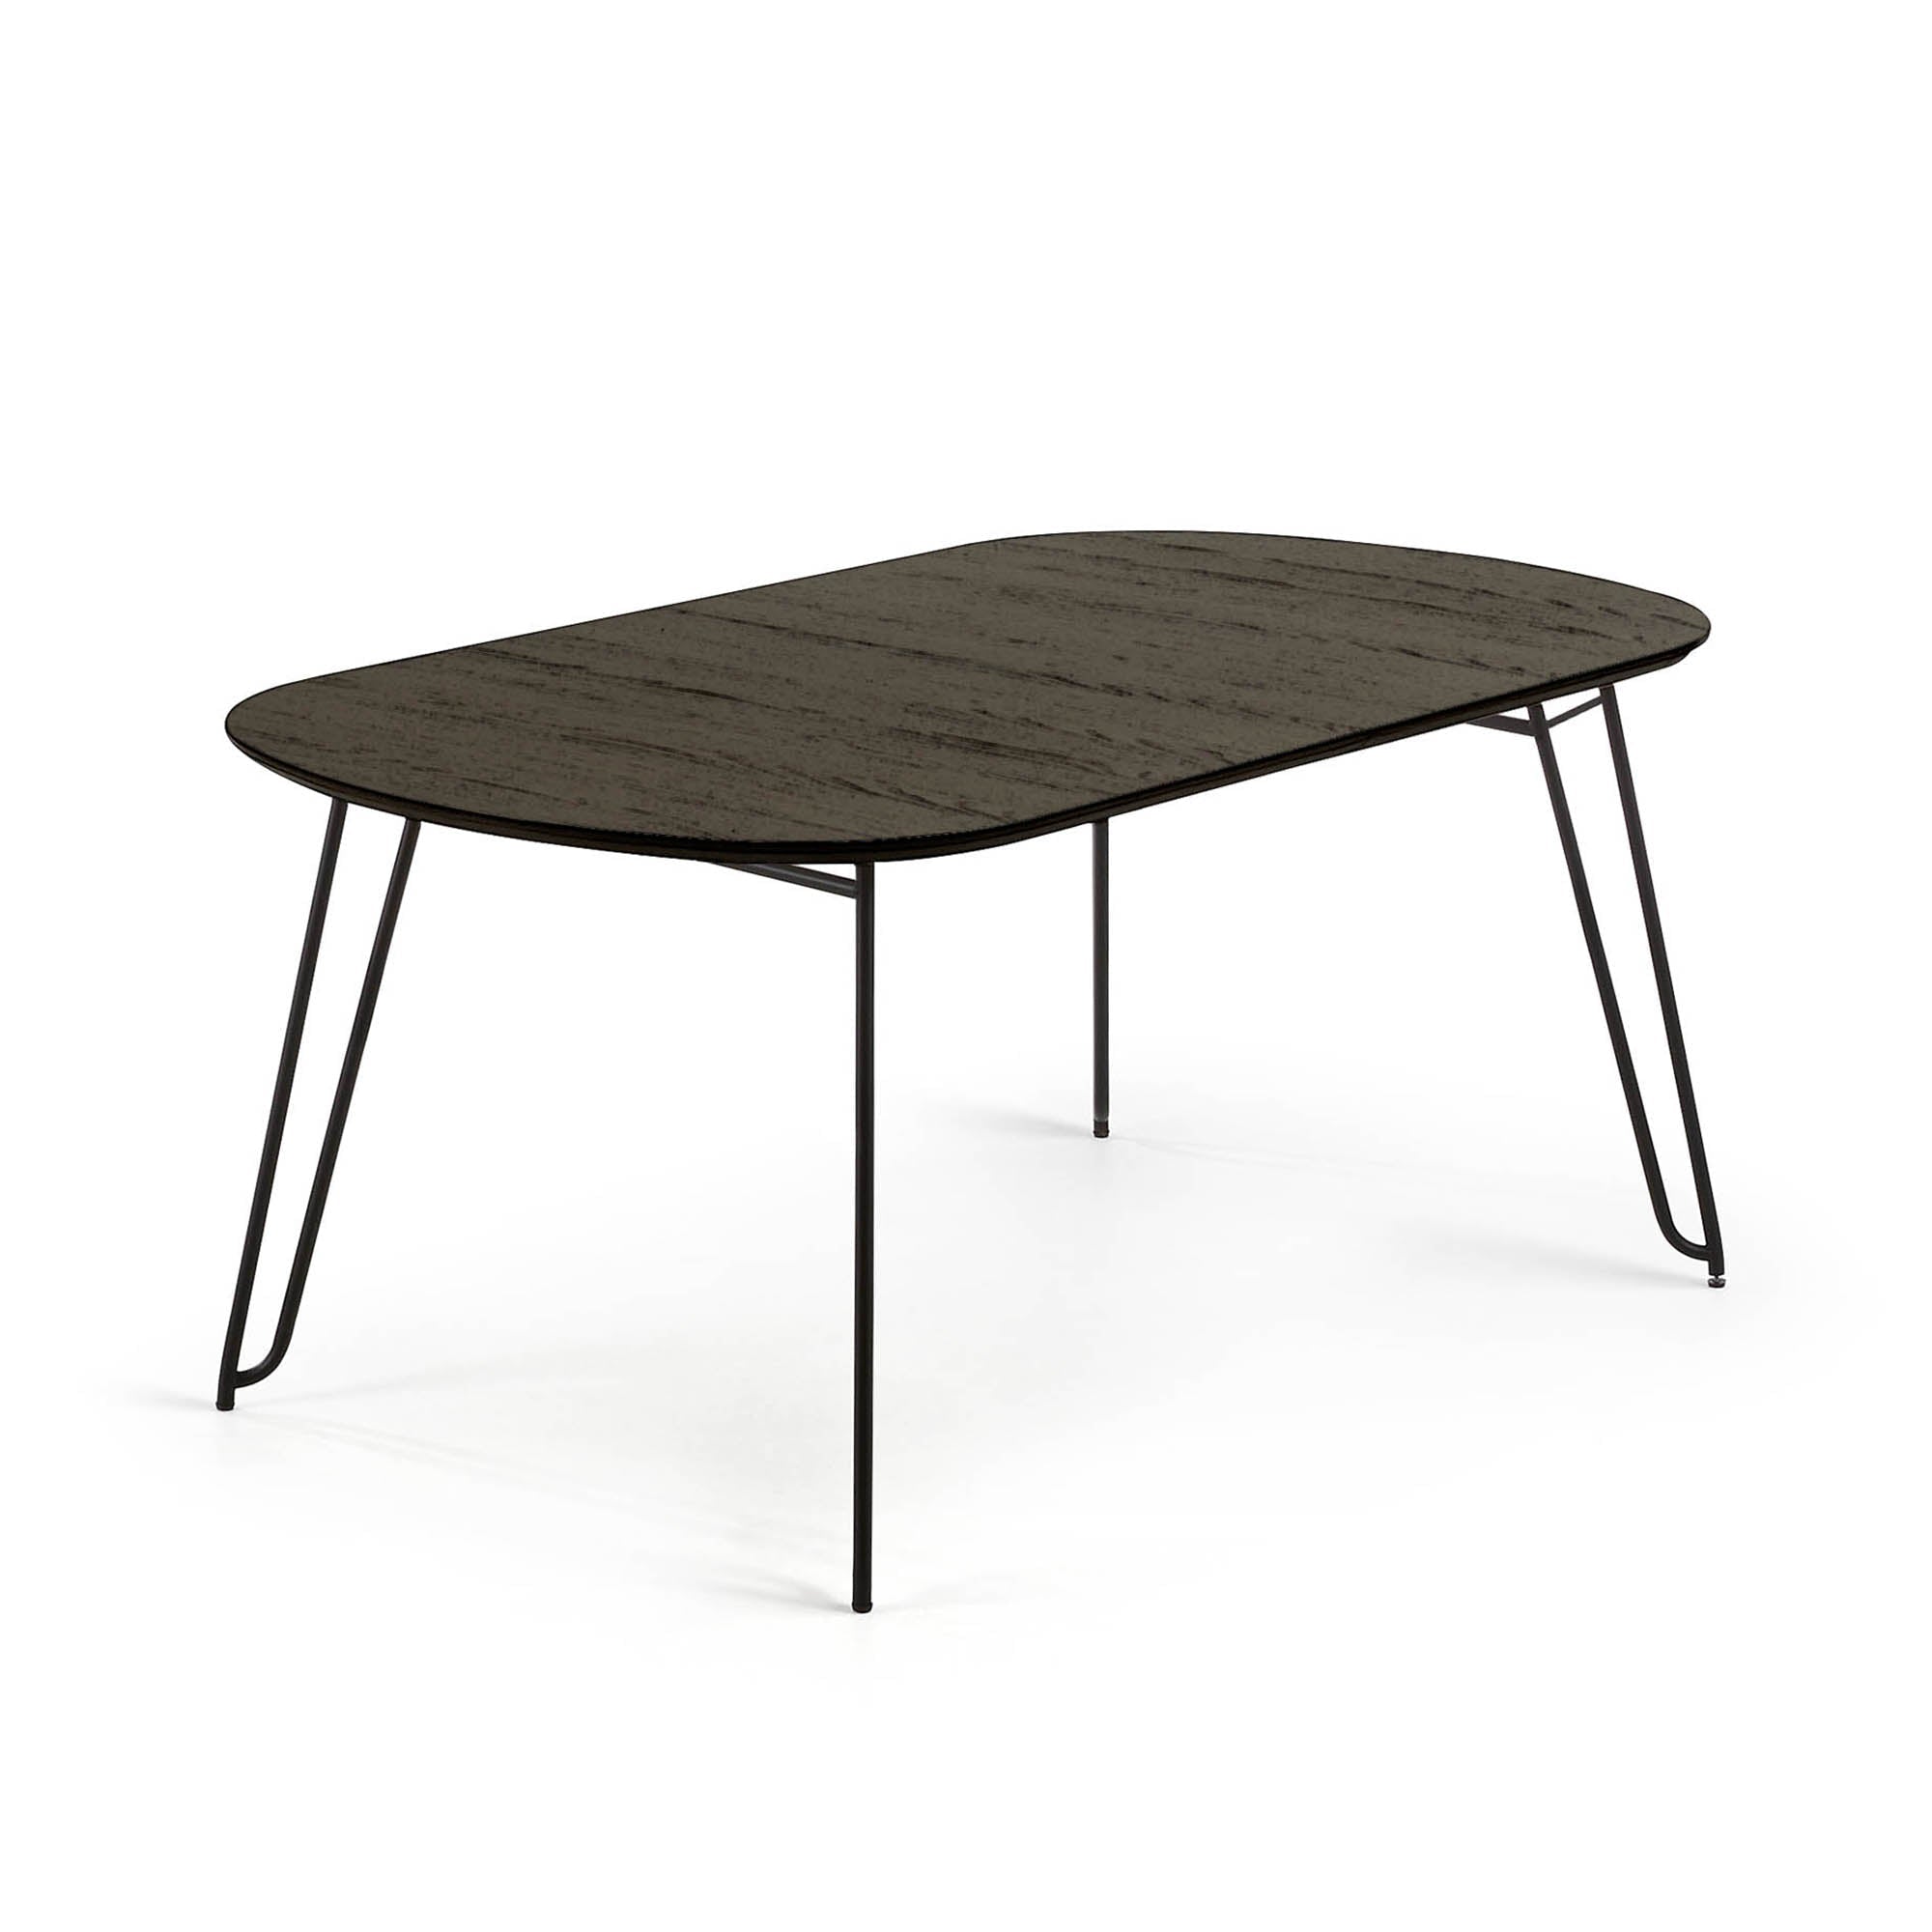 Kave Home Milian ausziehbarer Tisch Eschenfurnier und schwarze Stahlbeine Schwarz-170 -> 320 x 100 x 75cm-NR010M01 #NR010M01